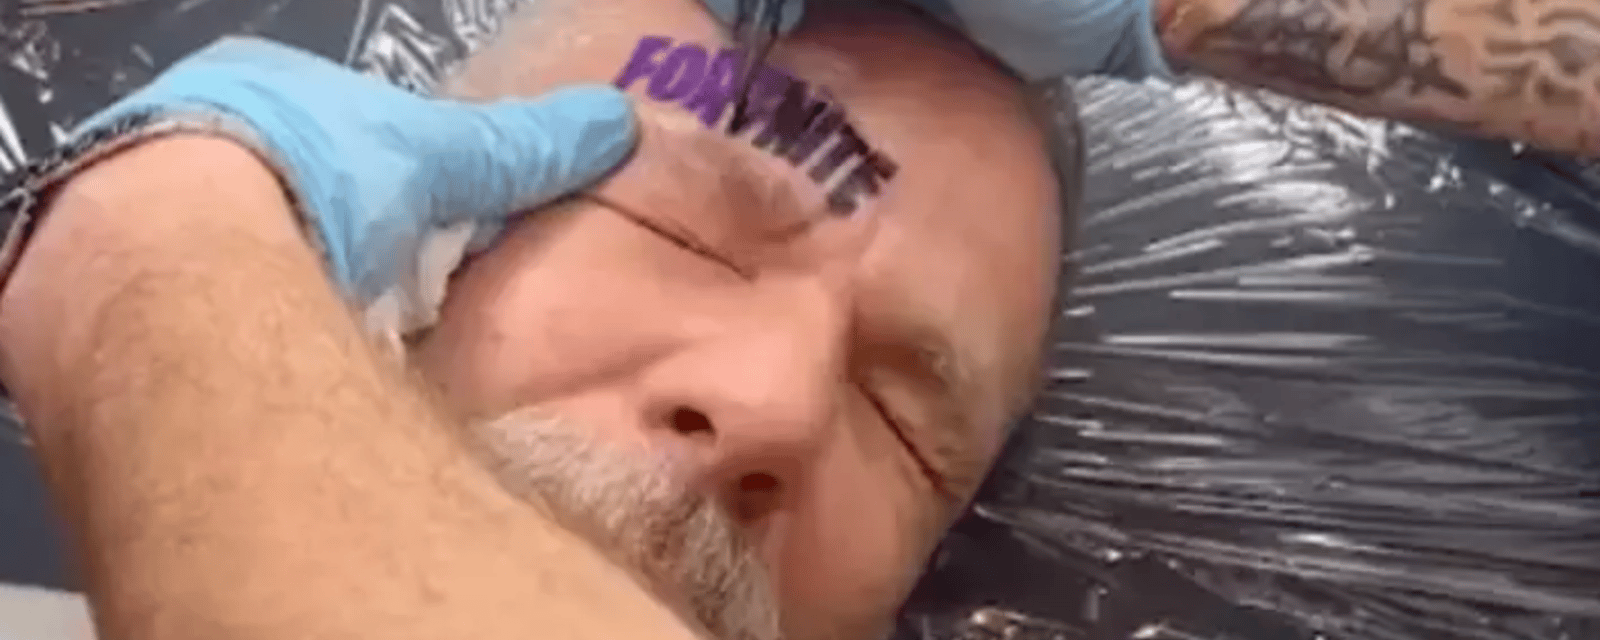 Un homme se fait tatouer un énorme logo de Fortnite après avoir perdu un pari contre son fils.